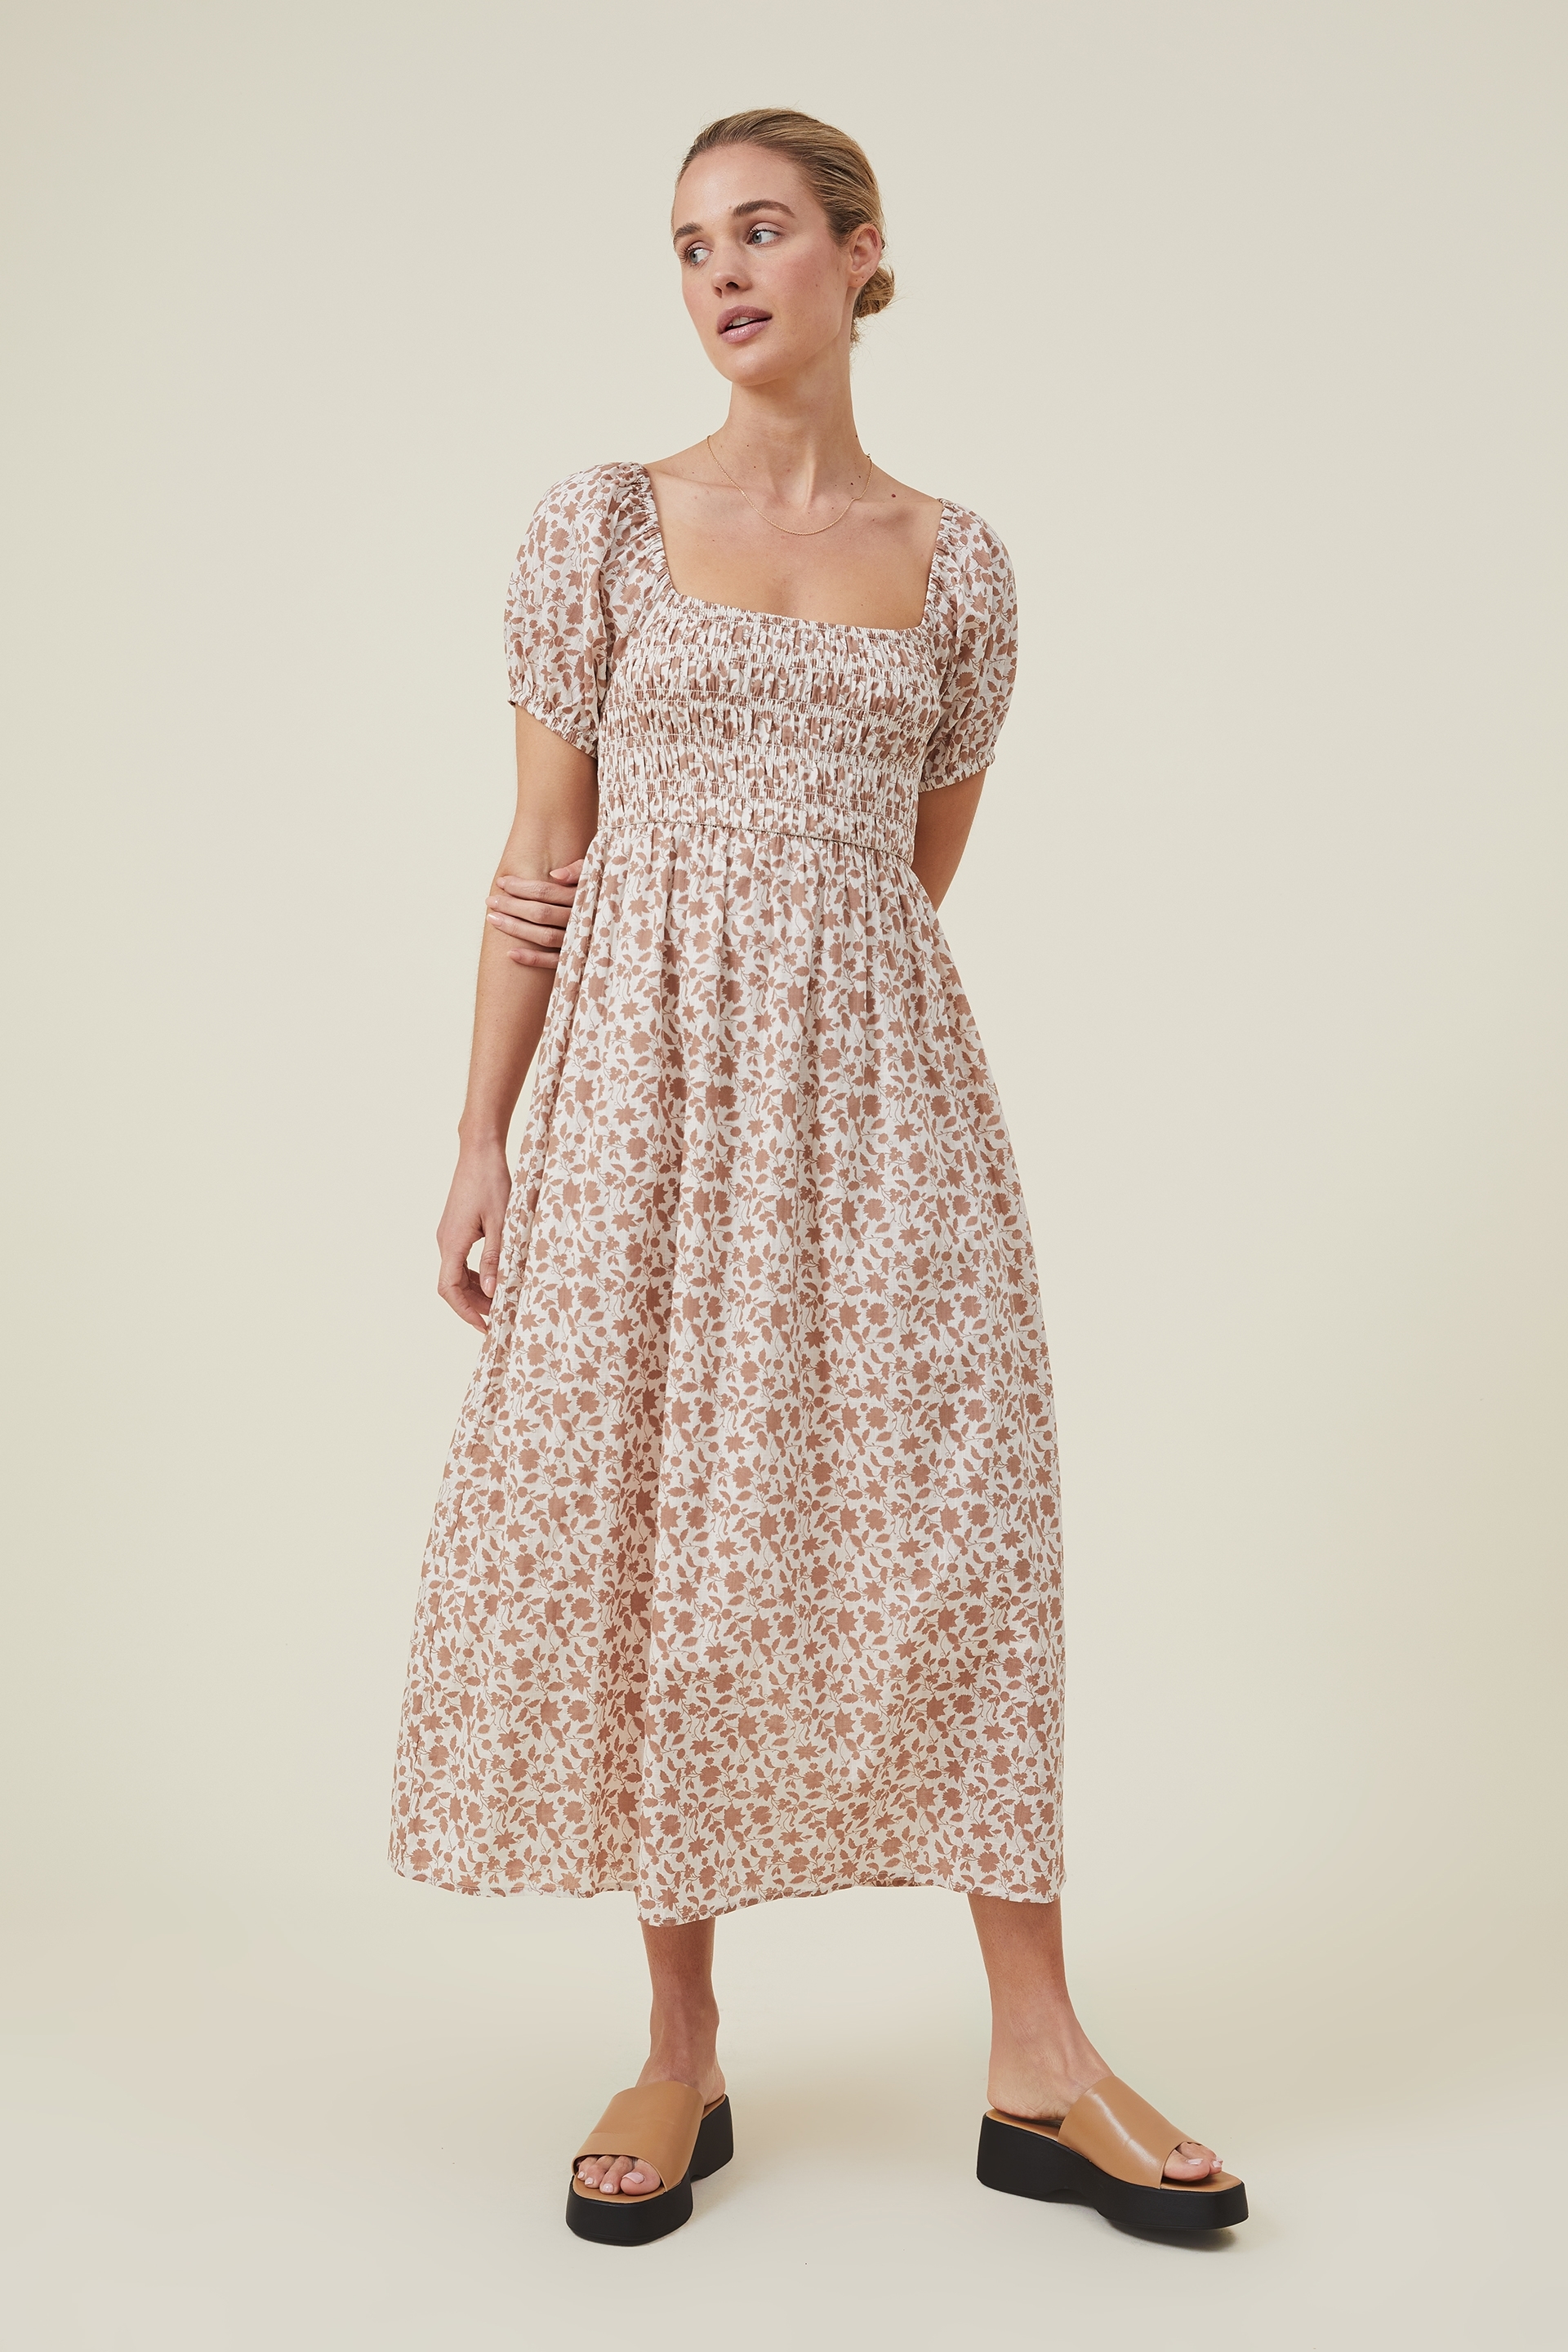 Cotton On Women - Adrianna Shirred Maxi Dress - Brihanna floral russet brown